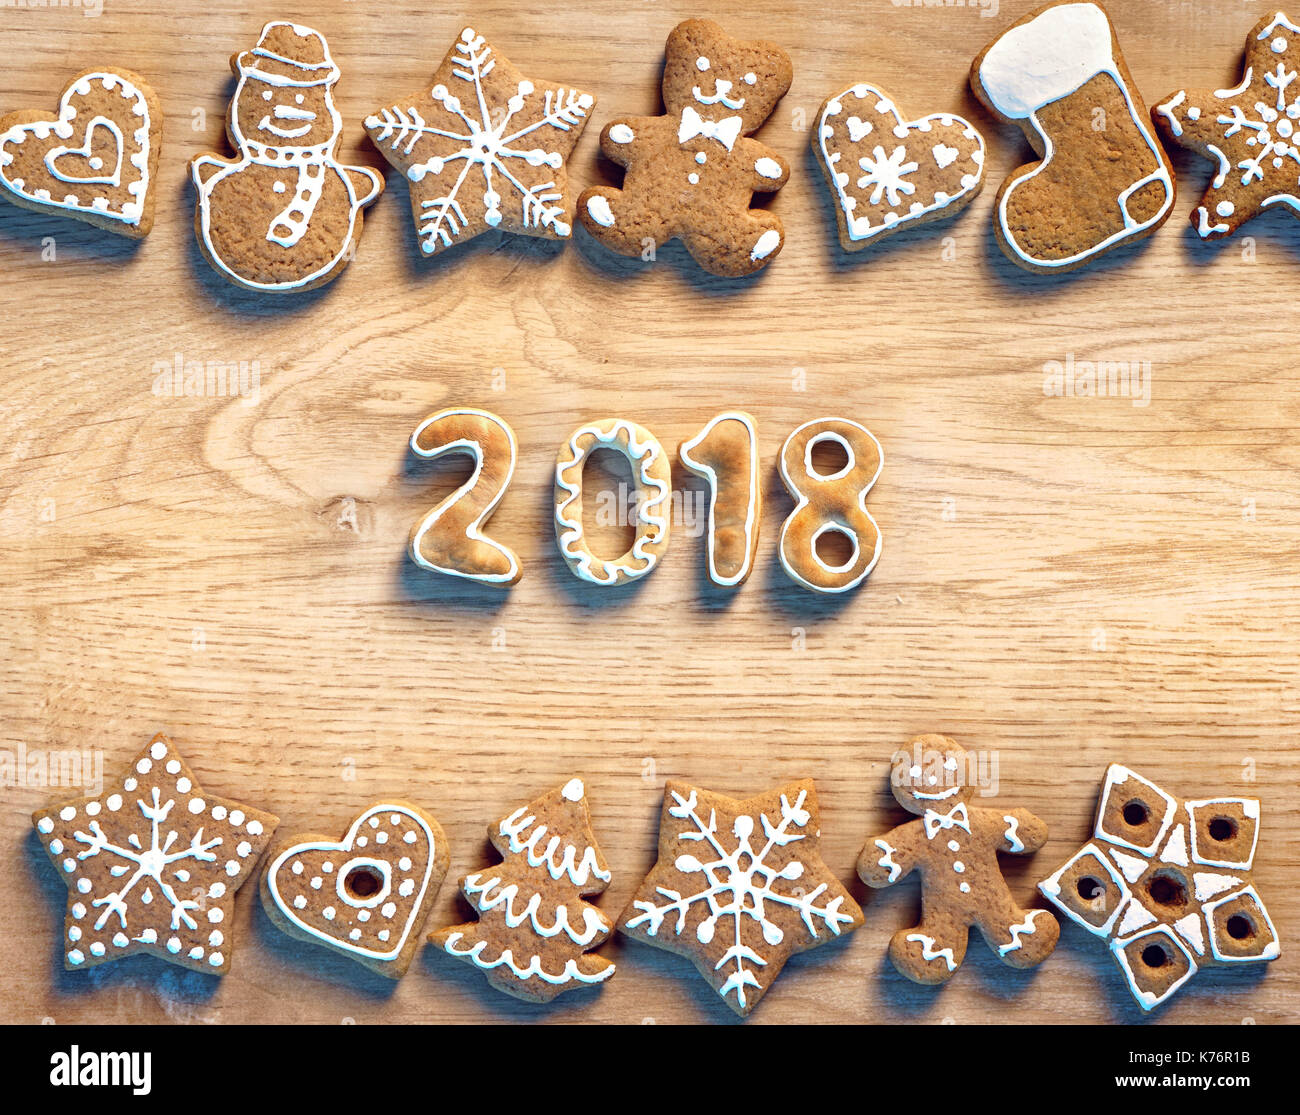 Weihnachtsplätzchen auf Holz- Hintergrund. 2018. Frohe Weihnachten und ein glückliches neues Jahr! Ansicht von oben. Produkt mit hoher Auflösung Stockfoto